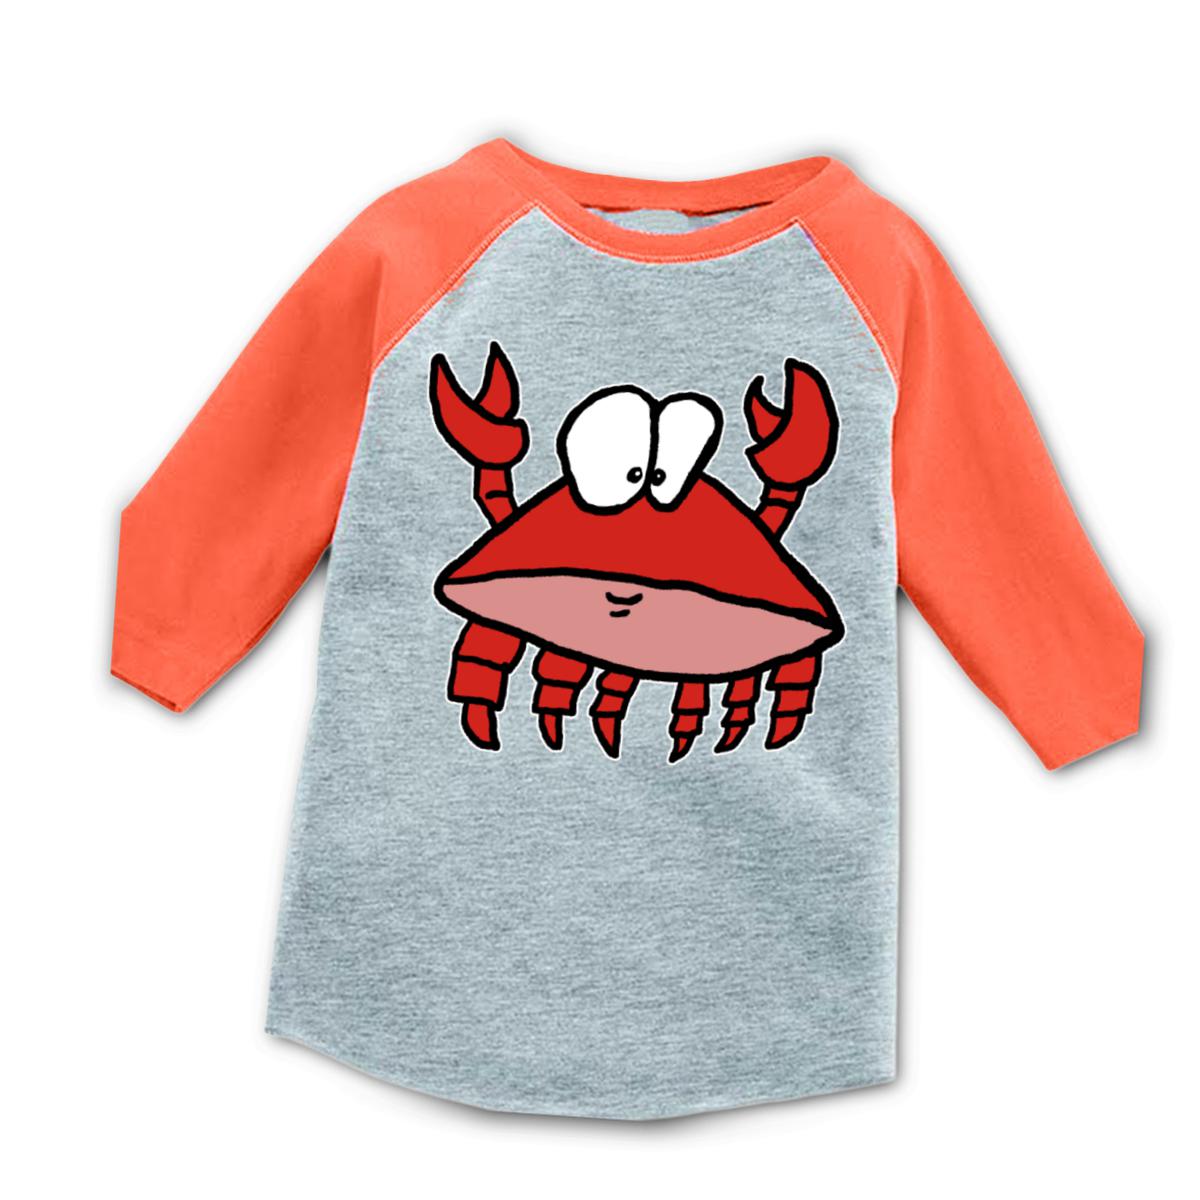 Crab 2.0 Toddler Raglan Tee 56T heather-orange